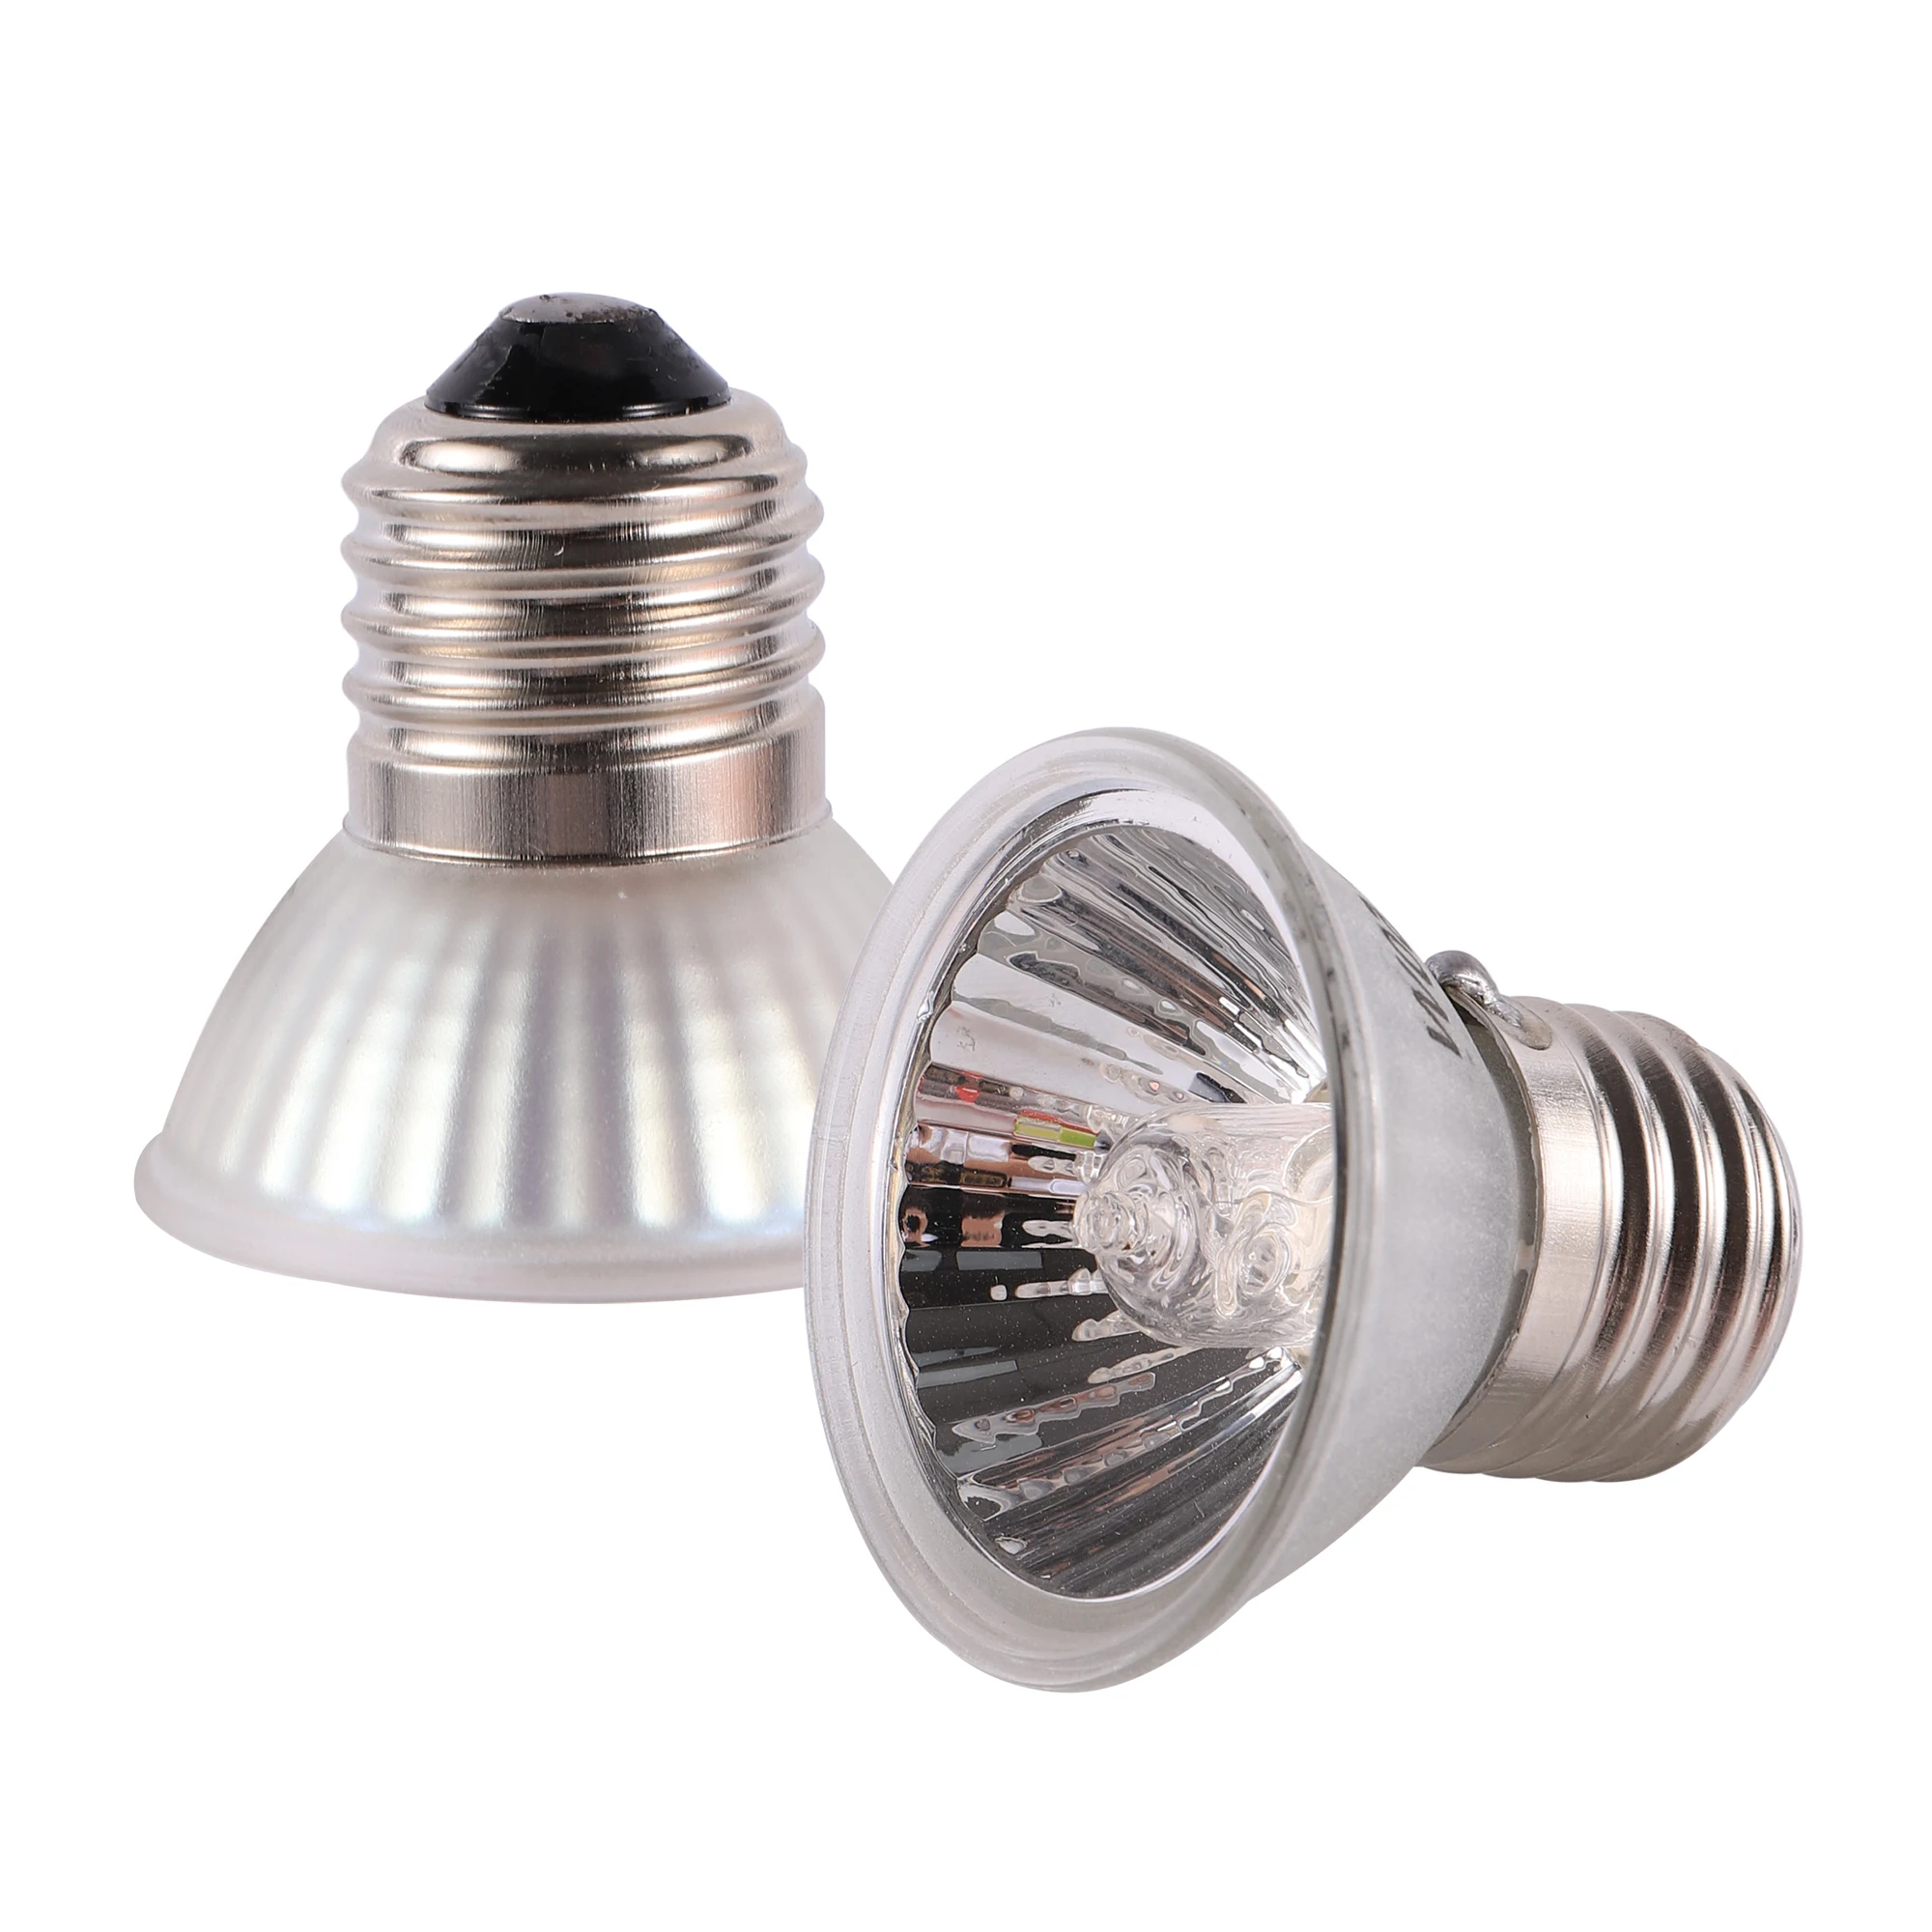 זוחל המנורה 25/50/75W UVA+UVB 3.0 מחמד חום מנורת הנורה צב מתחמם UV נורות דו-חיים, לטאות, טמפרטורה Controlle - 2